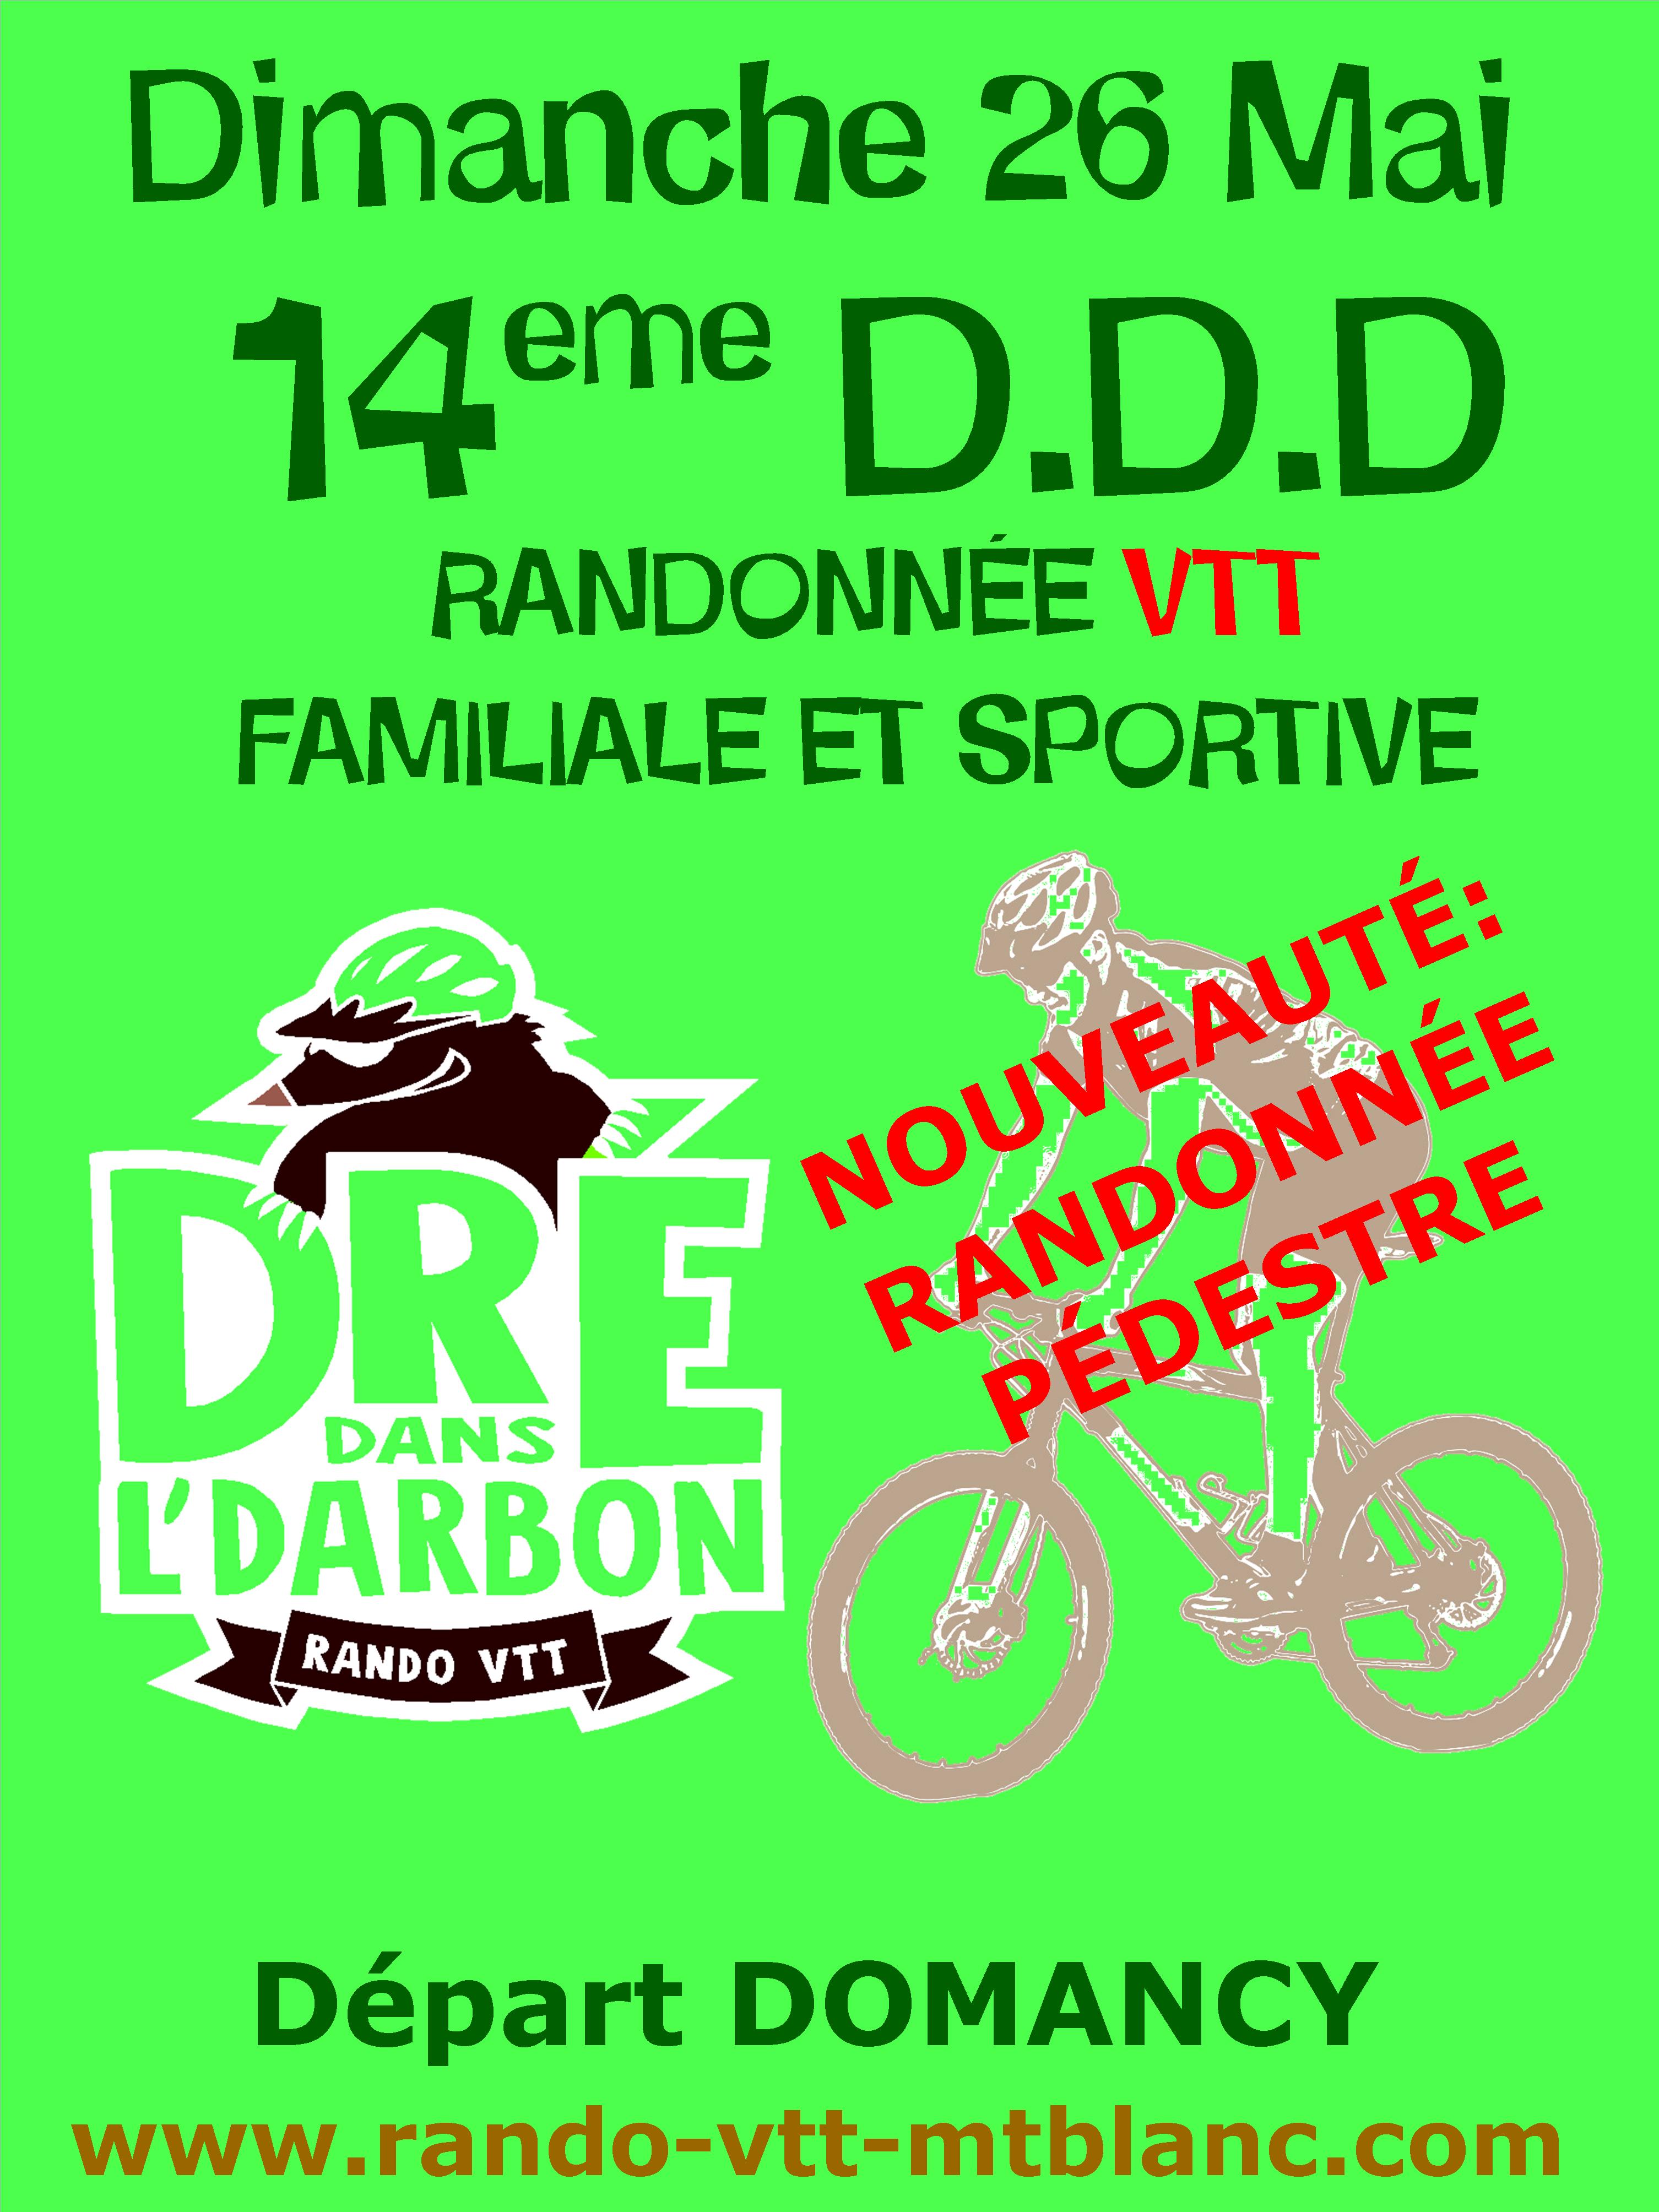 Affiche de Dré Dans l'Darbon, une rando VTT au Pays du Mont-blanc (14ème édition) à Domancy